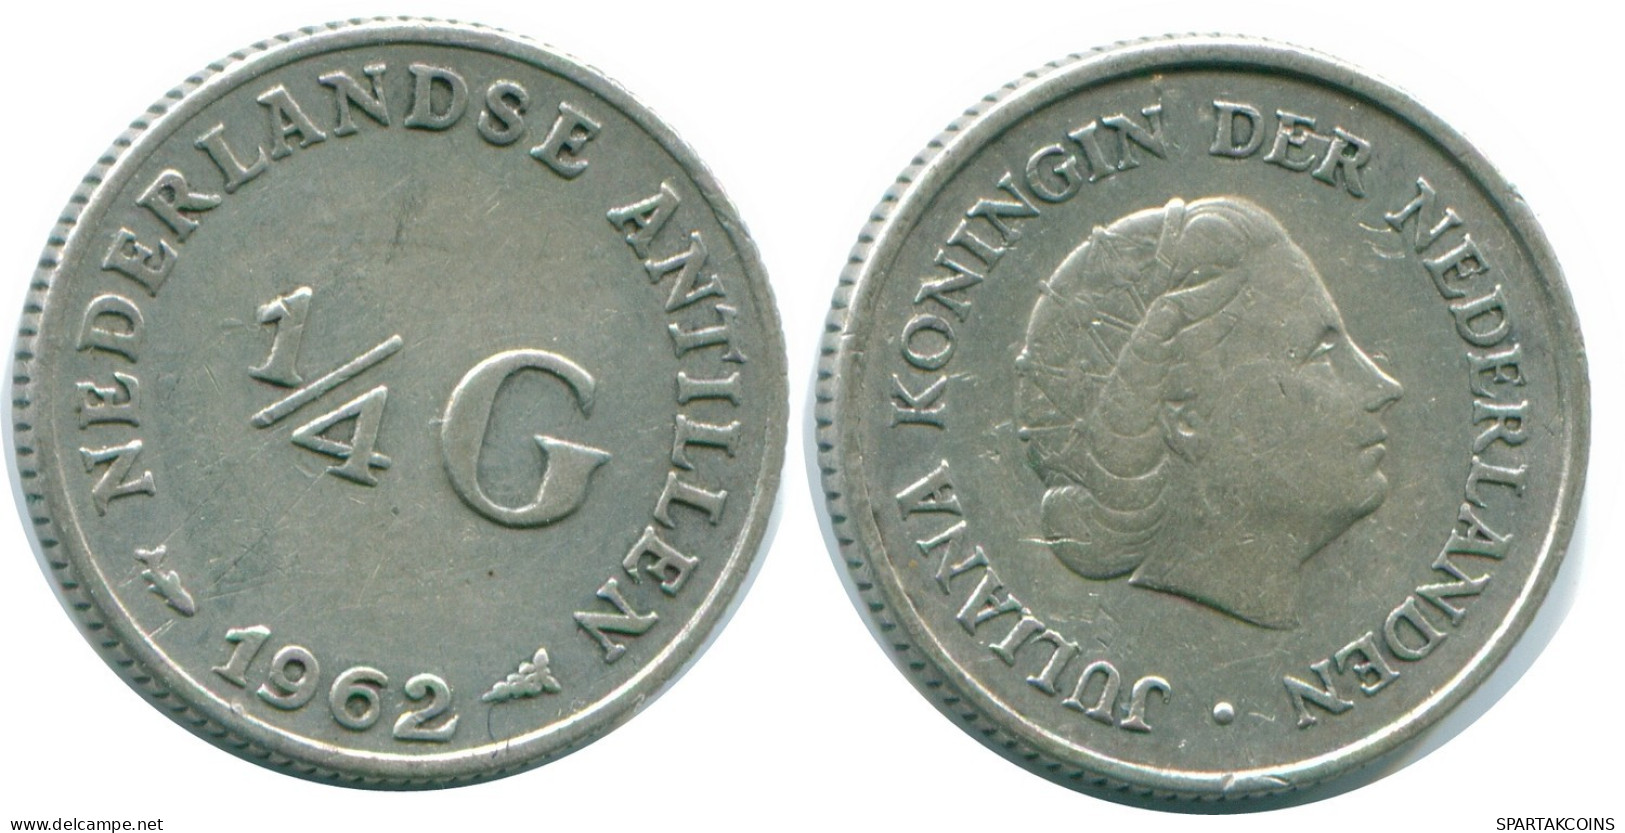 1/4 GULDEN 1962 NIEDERLÄNDISCHE ANTILLEN SILBER Koloniale Münze #NL11122.4.D.A - Niederländische Antillen